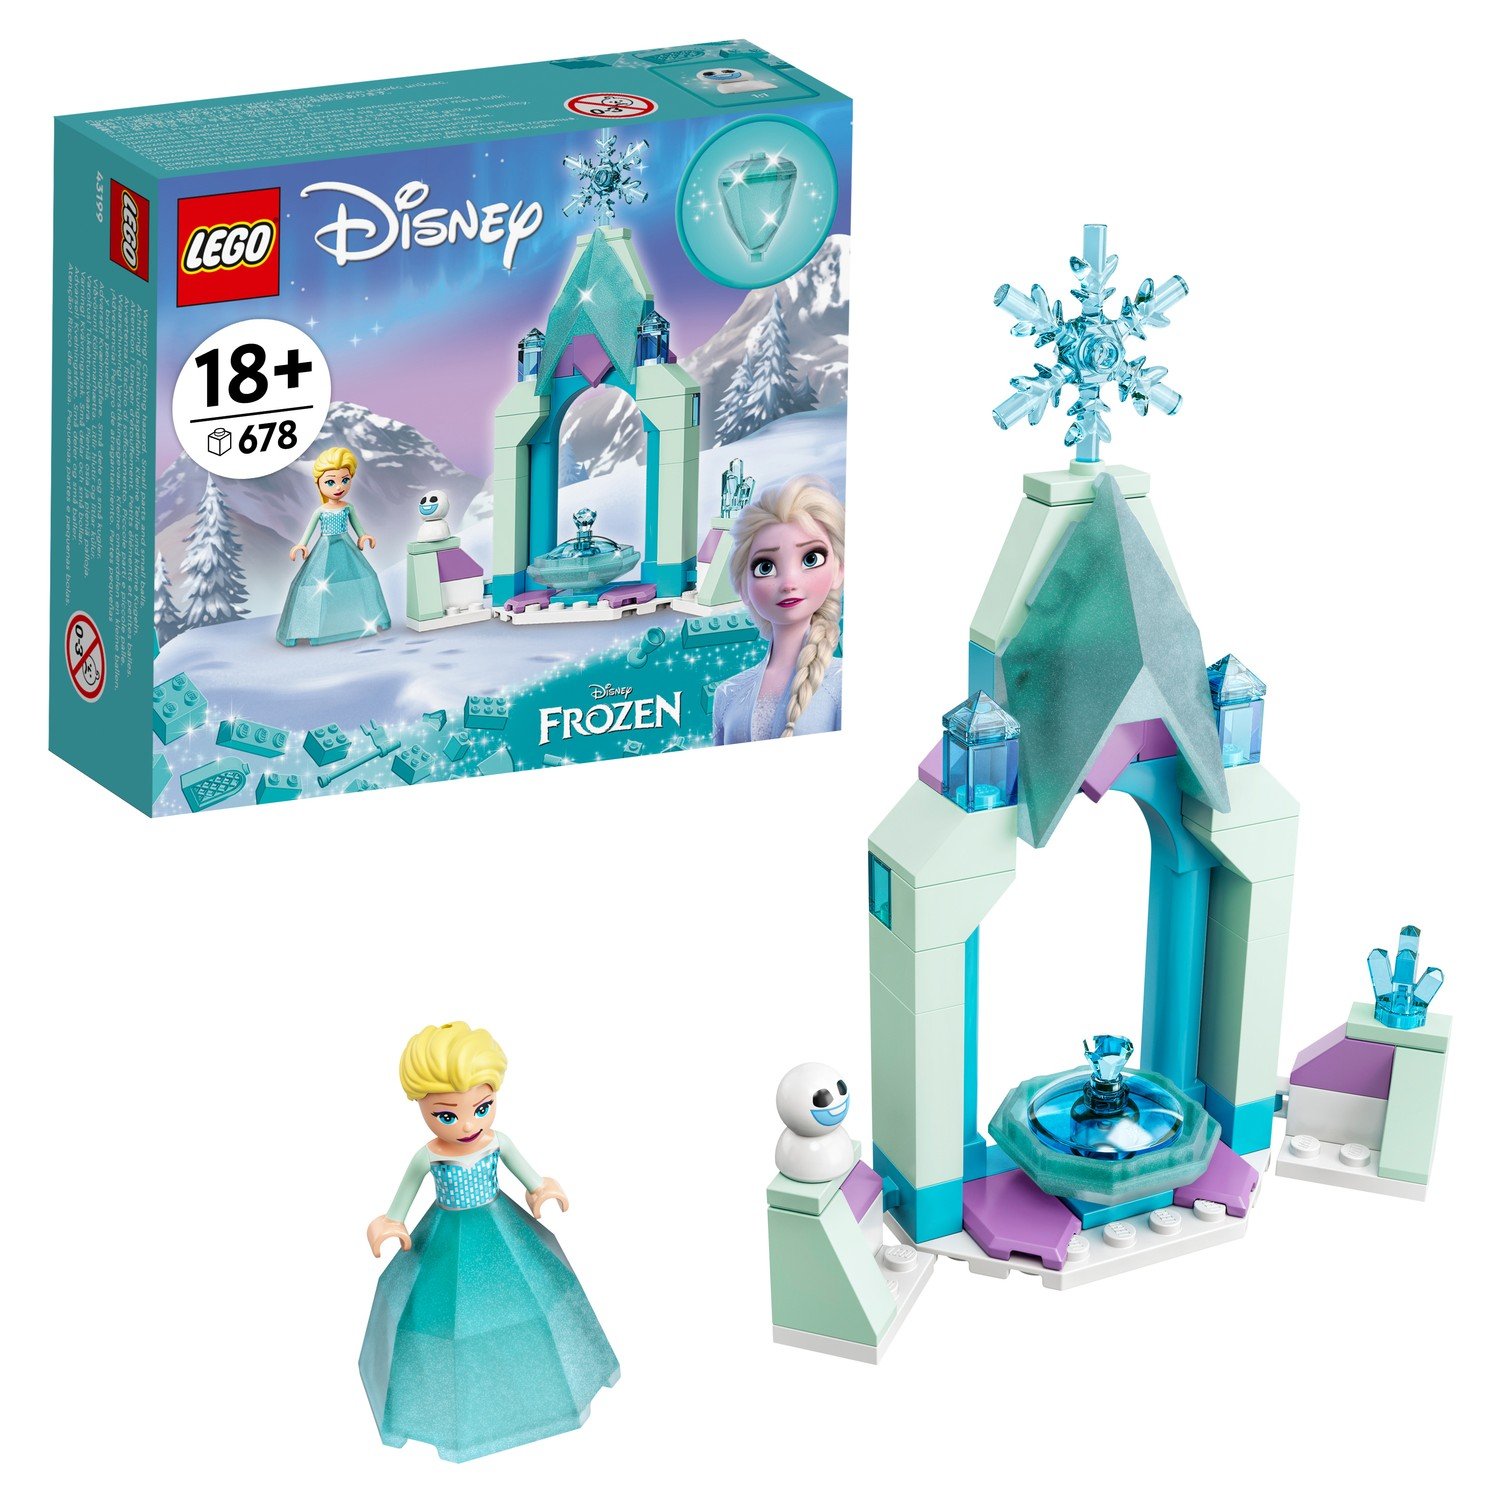 LEGO Disney Princess Frozen Двор замка Эльзы 43199 конструктор lego disney princess 43199 лего принцессы двор замка анны